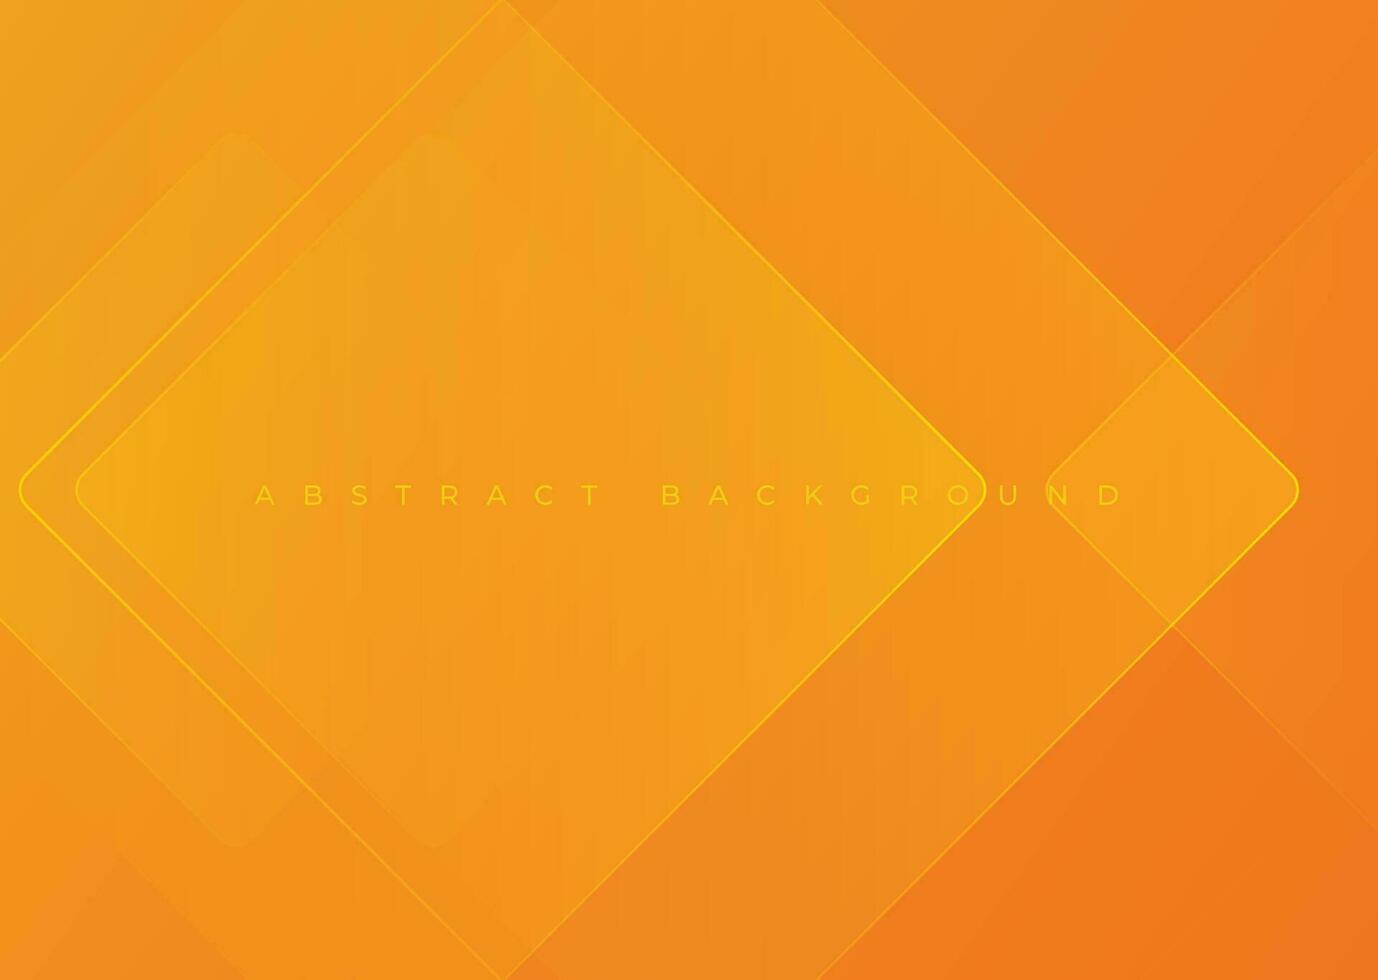 abstrakt Vektor Gelb Orange Überlappung Schicht Hintergrund, Licht Linien Wirkung. geometrisch gestalten Overlay Lagen. Grafik Design modern Element futuristisch einfach zum Banner, Flyer, Karte, Abdeckung, Broschüre